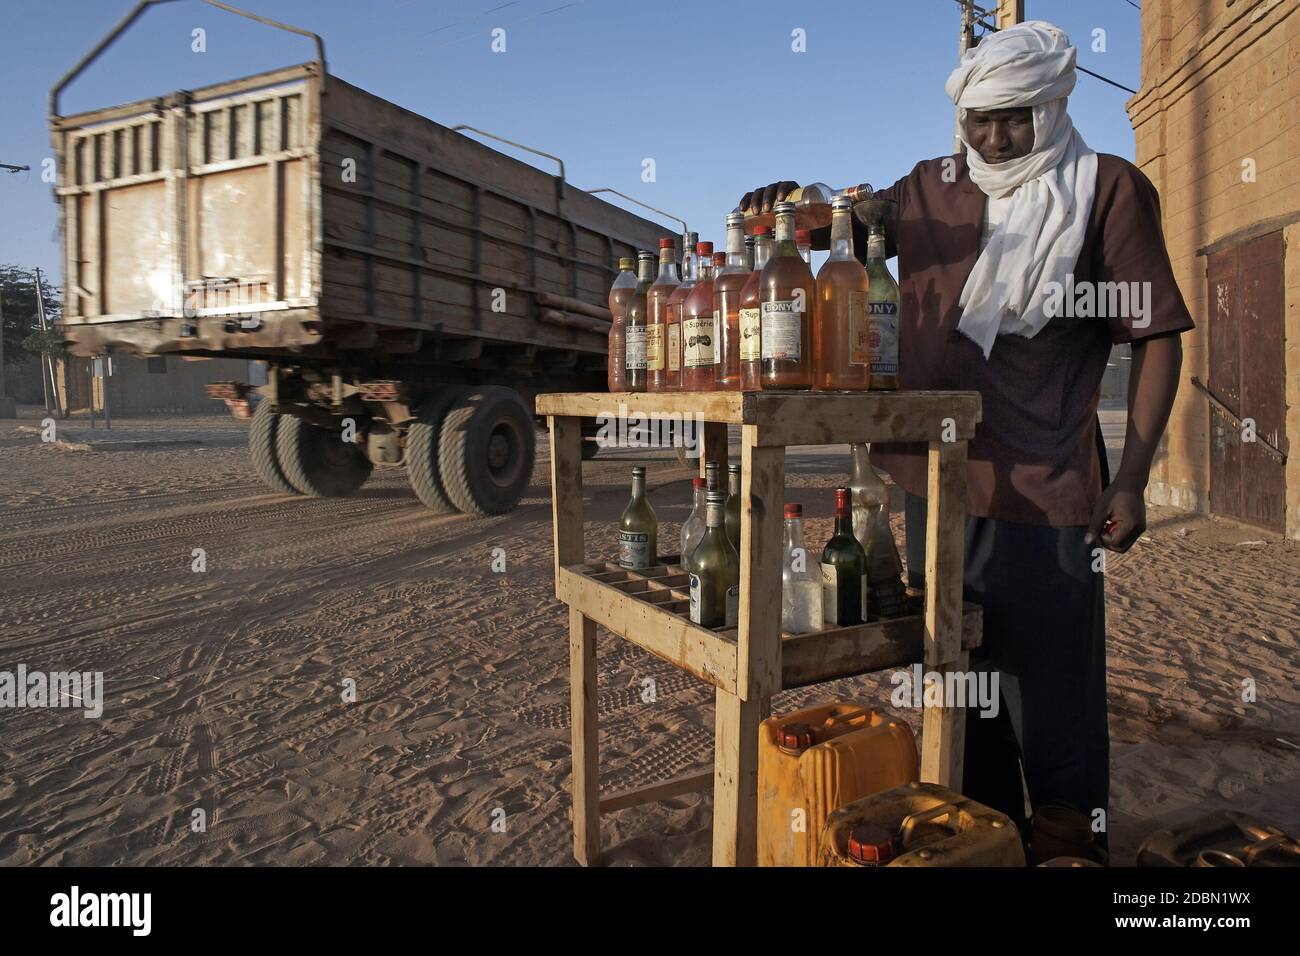 Uomini che vendono benzina in bottels su una strada a Timbuktu, Mali, Africa occidentale Foto Stock